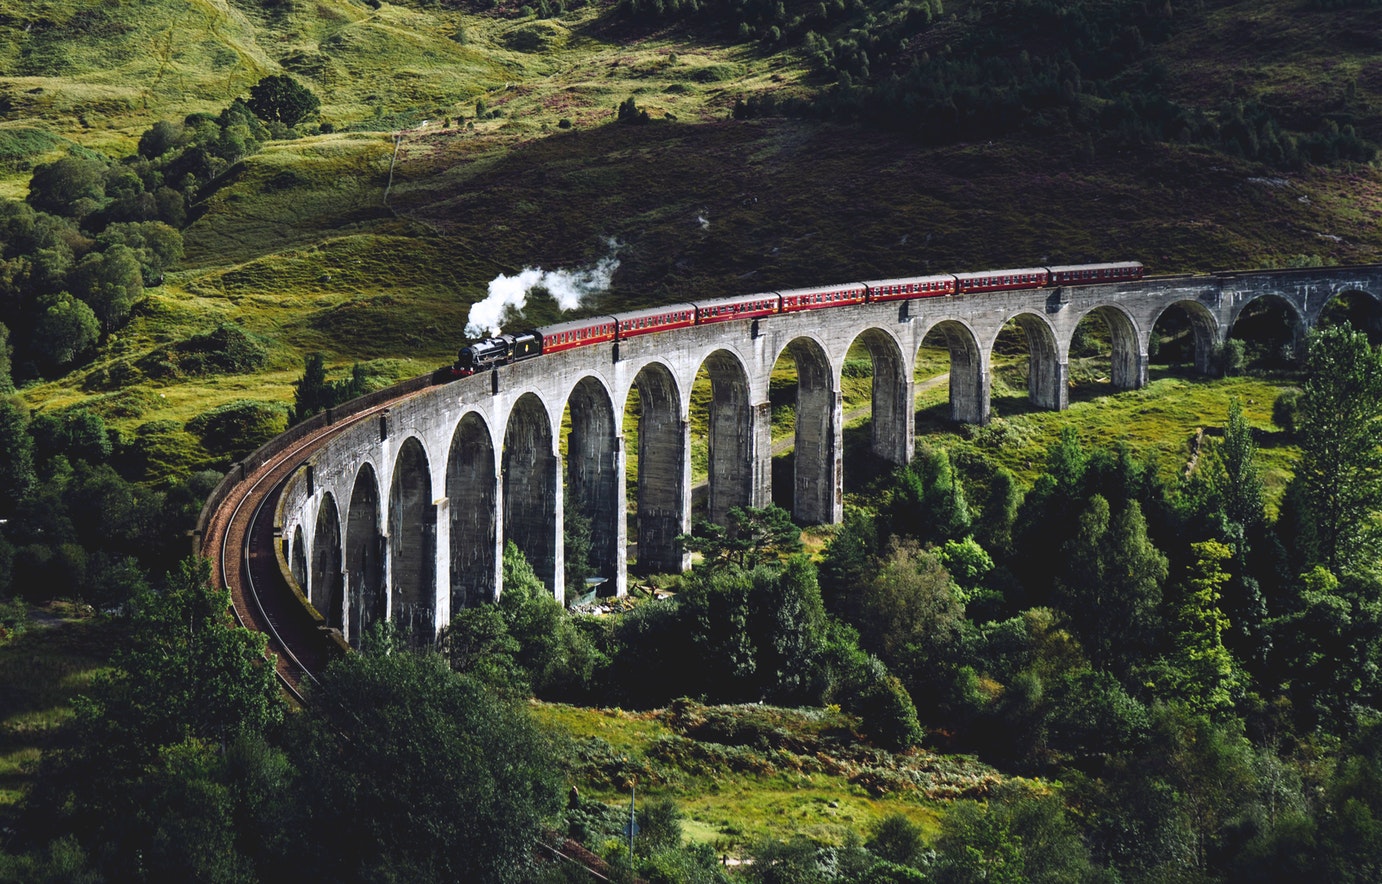 Un tren antiguo, con una locomotora de vapor, cruzando un puente de piedra con grandes arcos